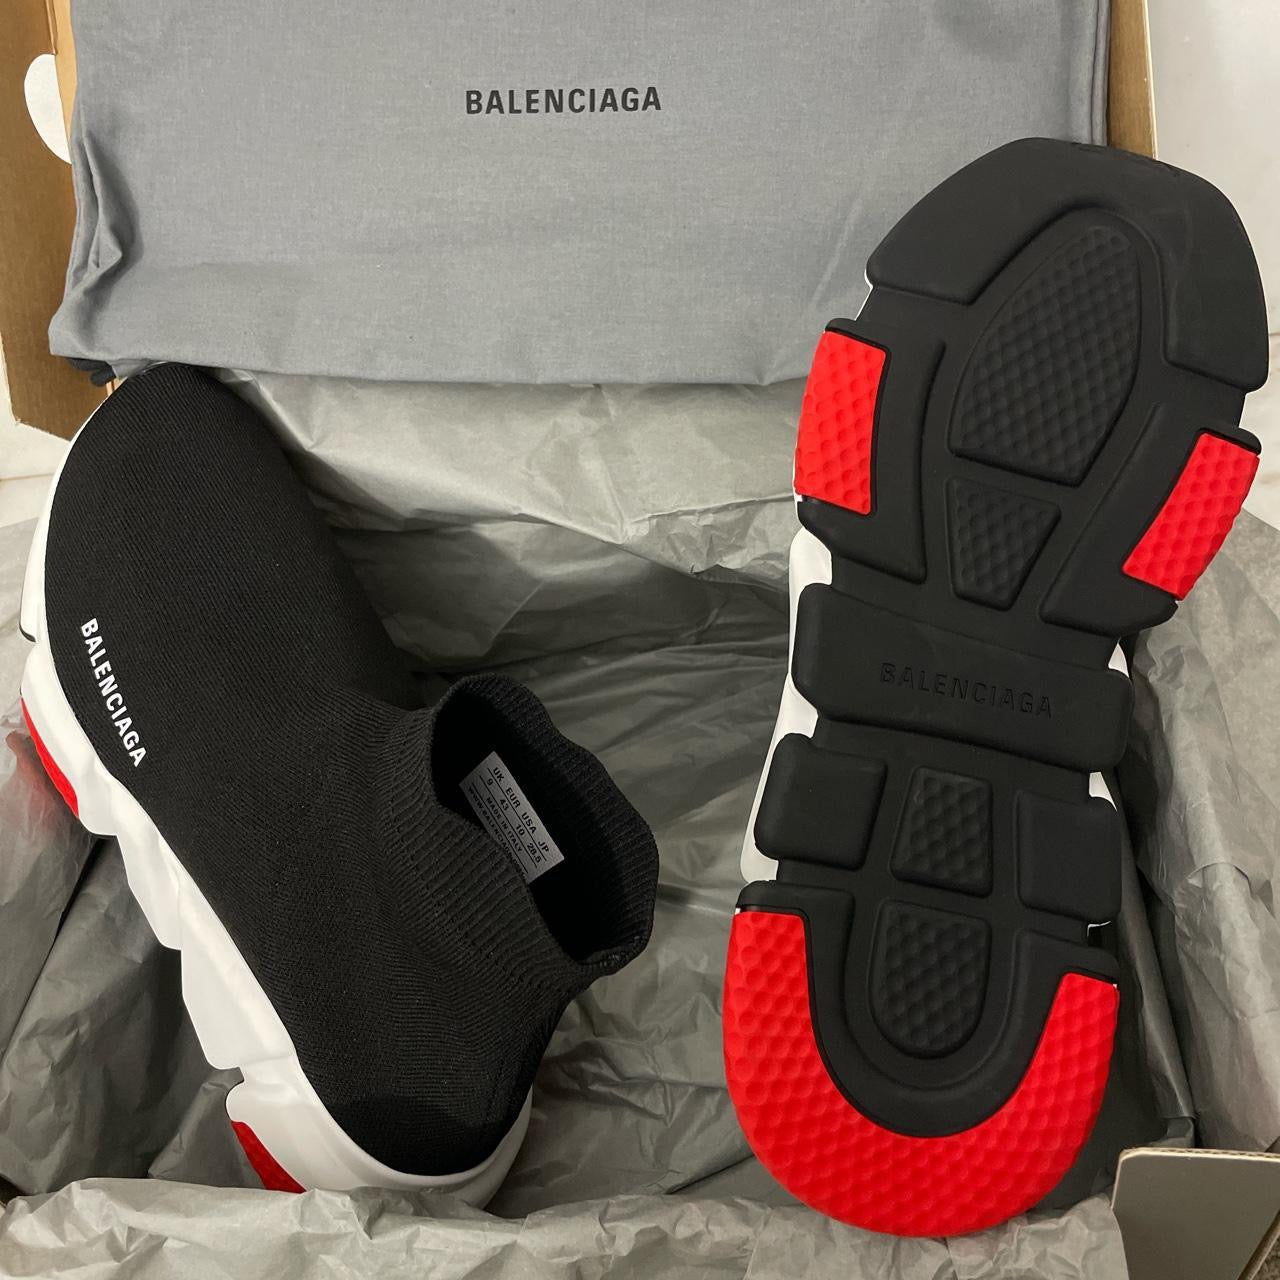 BALENCIAGA Triple S Tricolor sneakers black white red